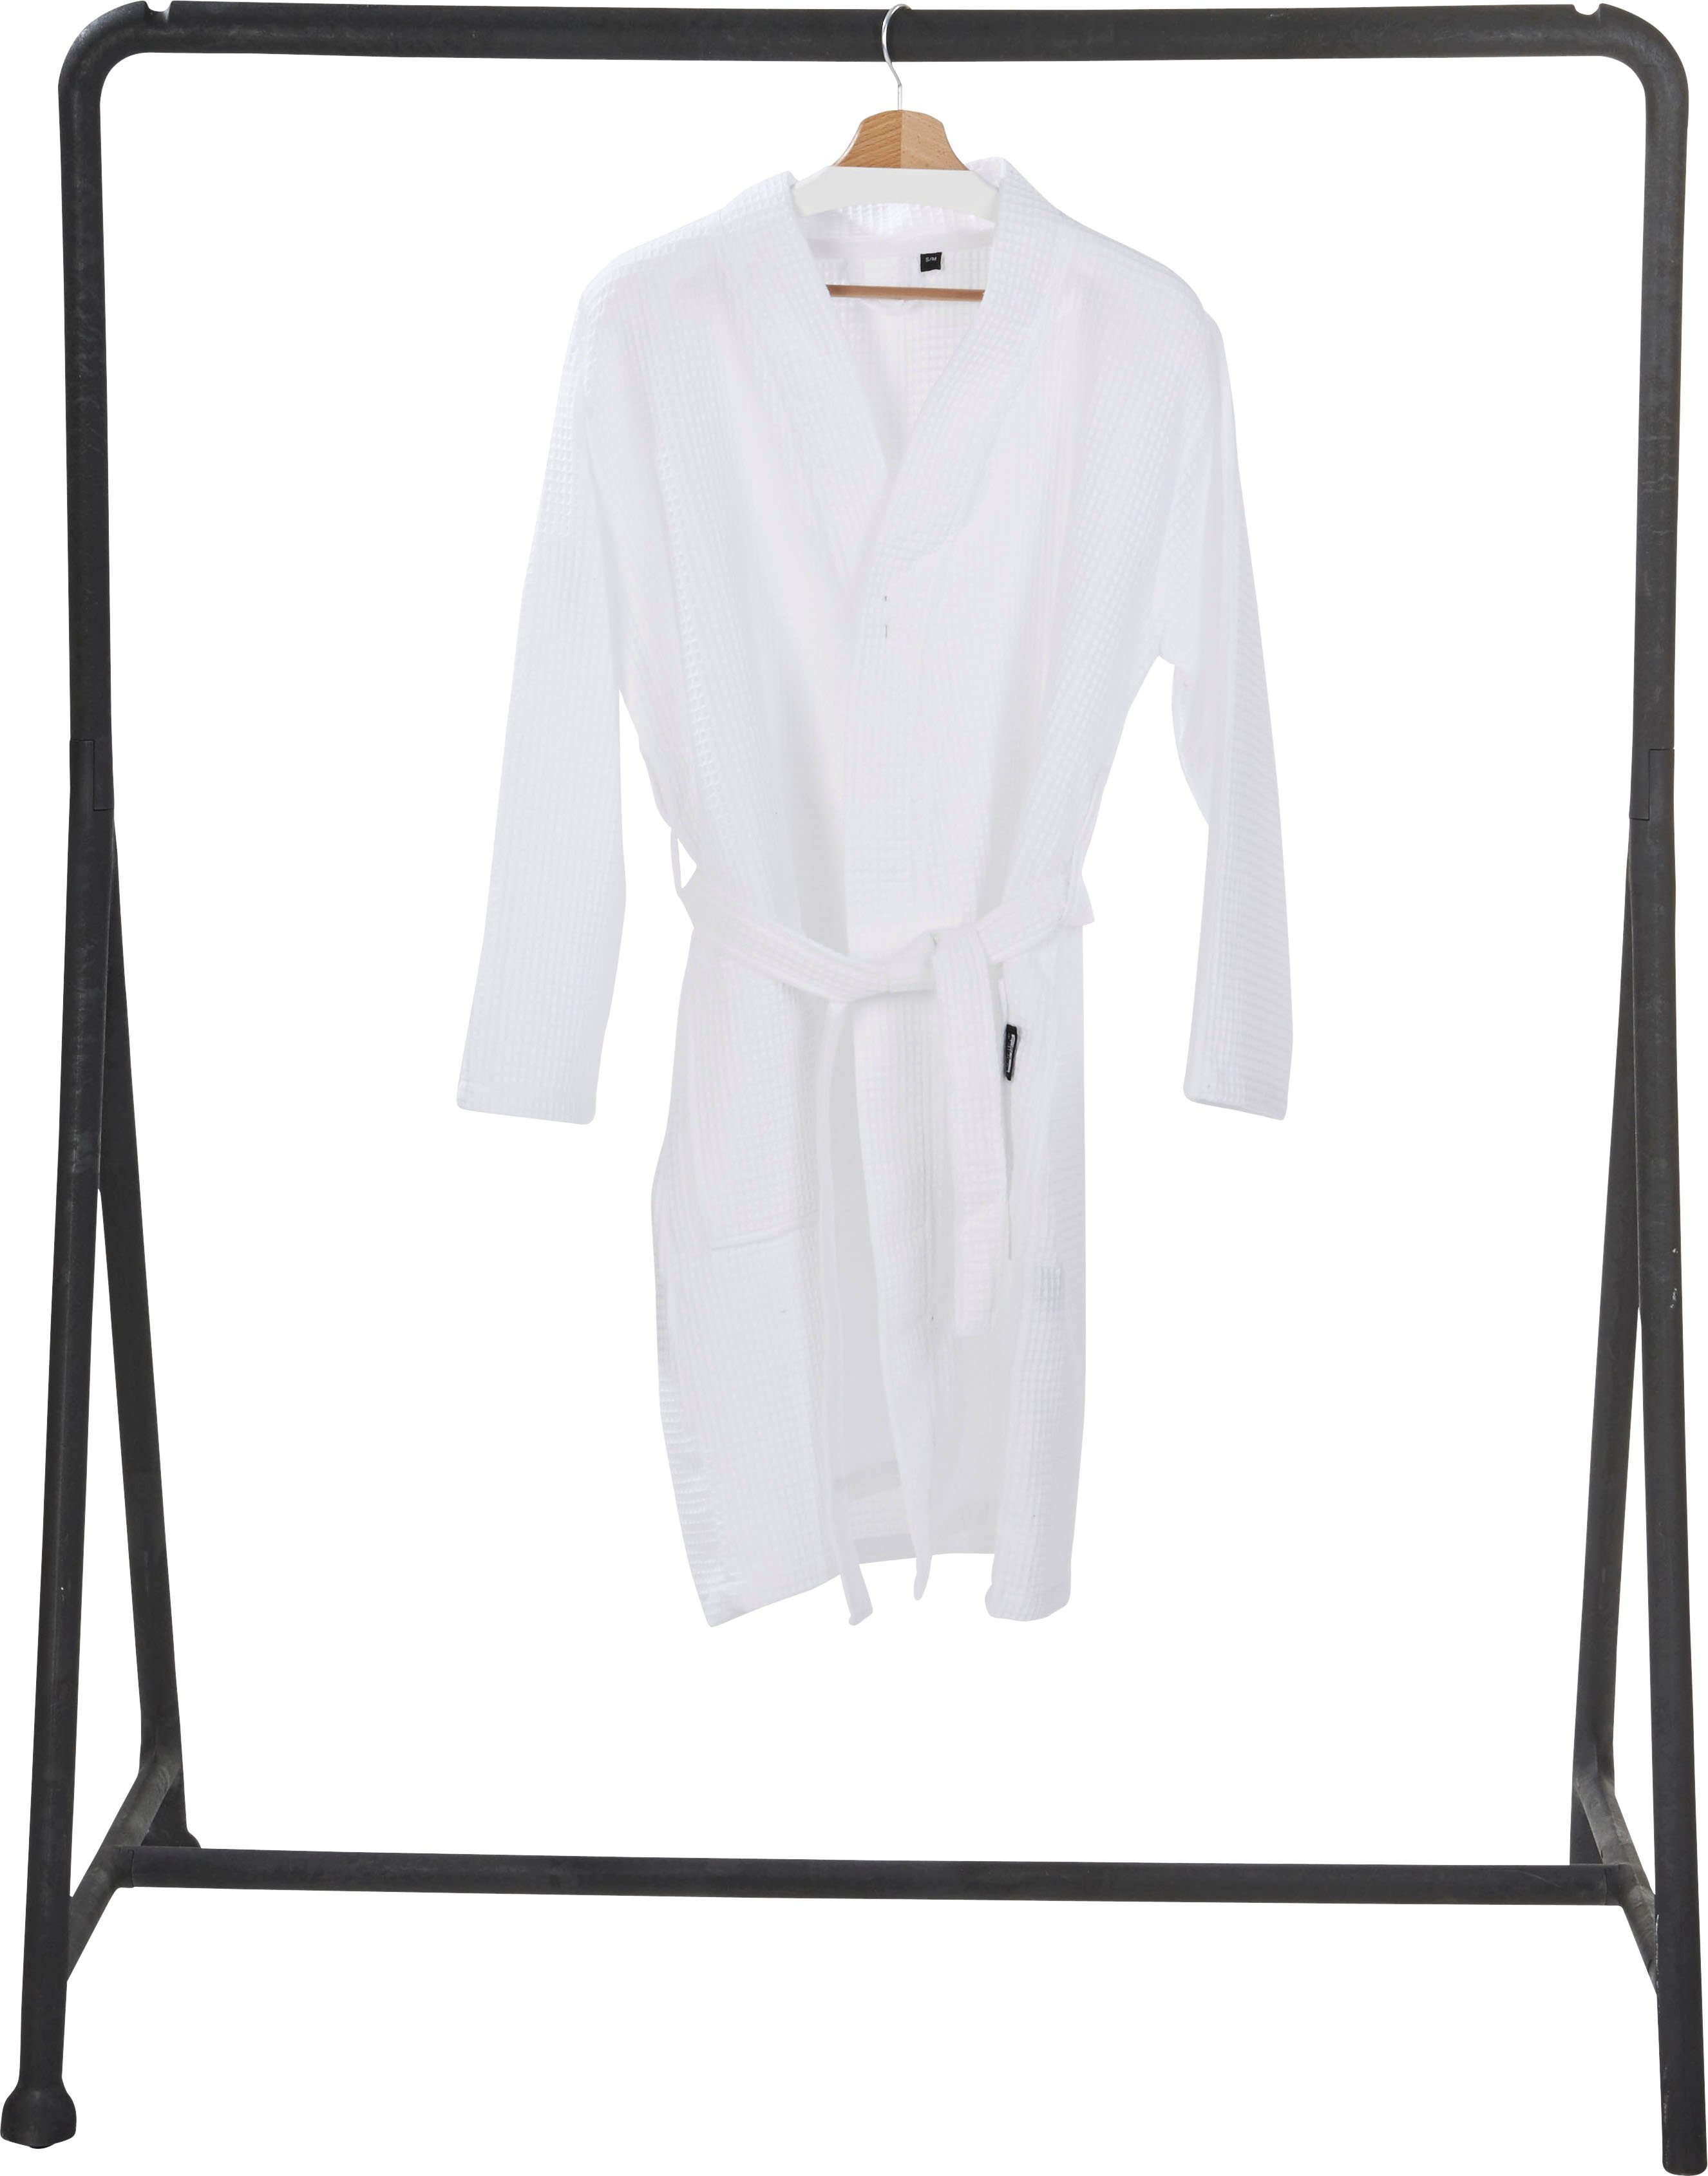 Schalkragen Taschen mit Damenbademantel done.® MySense, aufgesetzten Piqué, Kurzform, Waffelpiqué-Struktur, weiß und